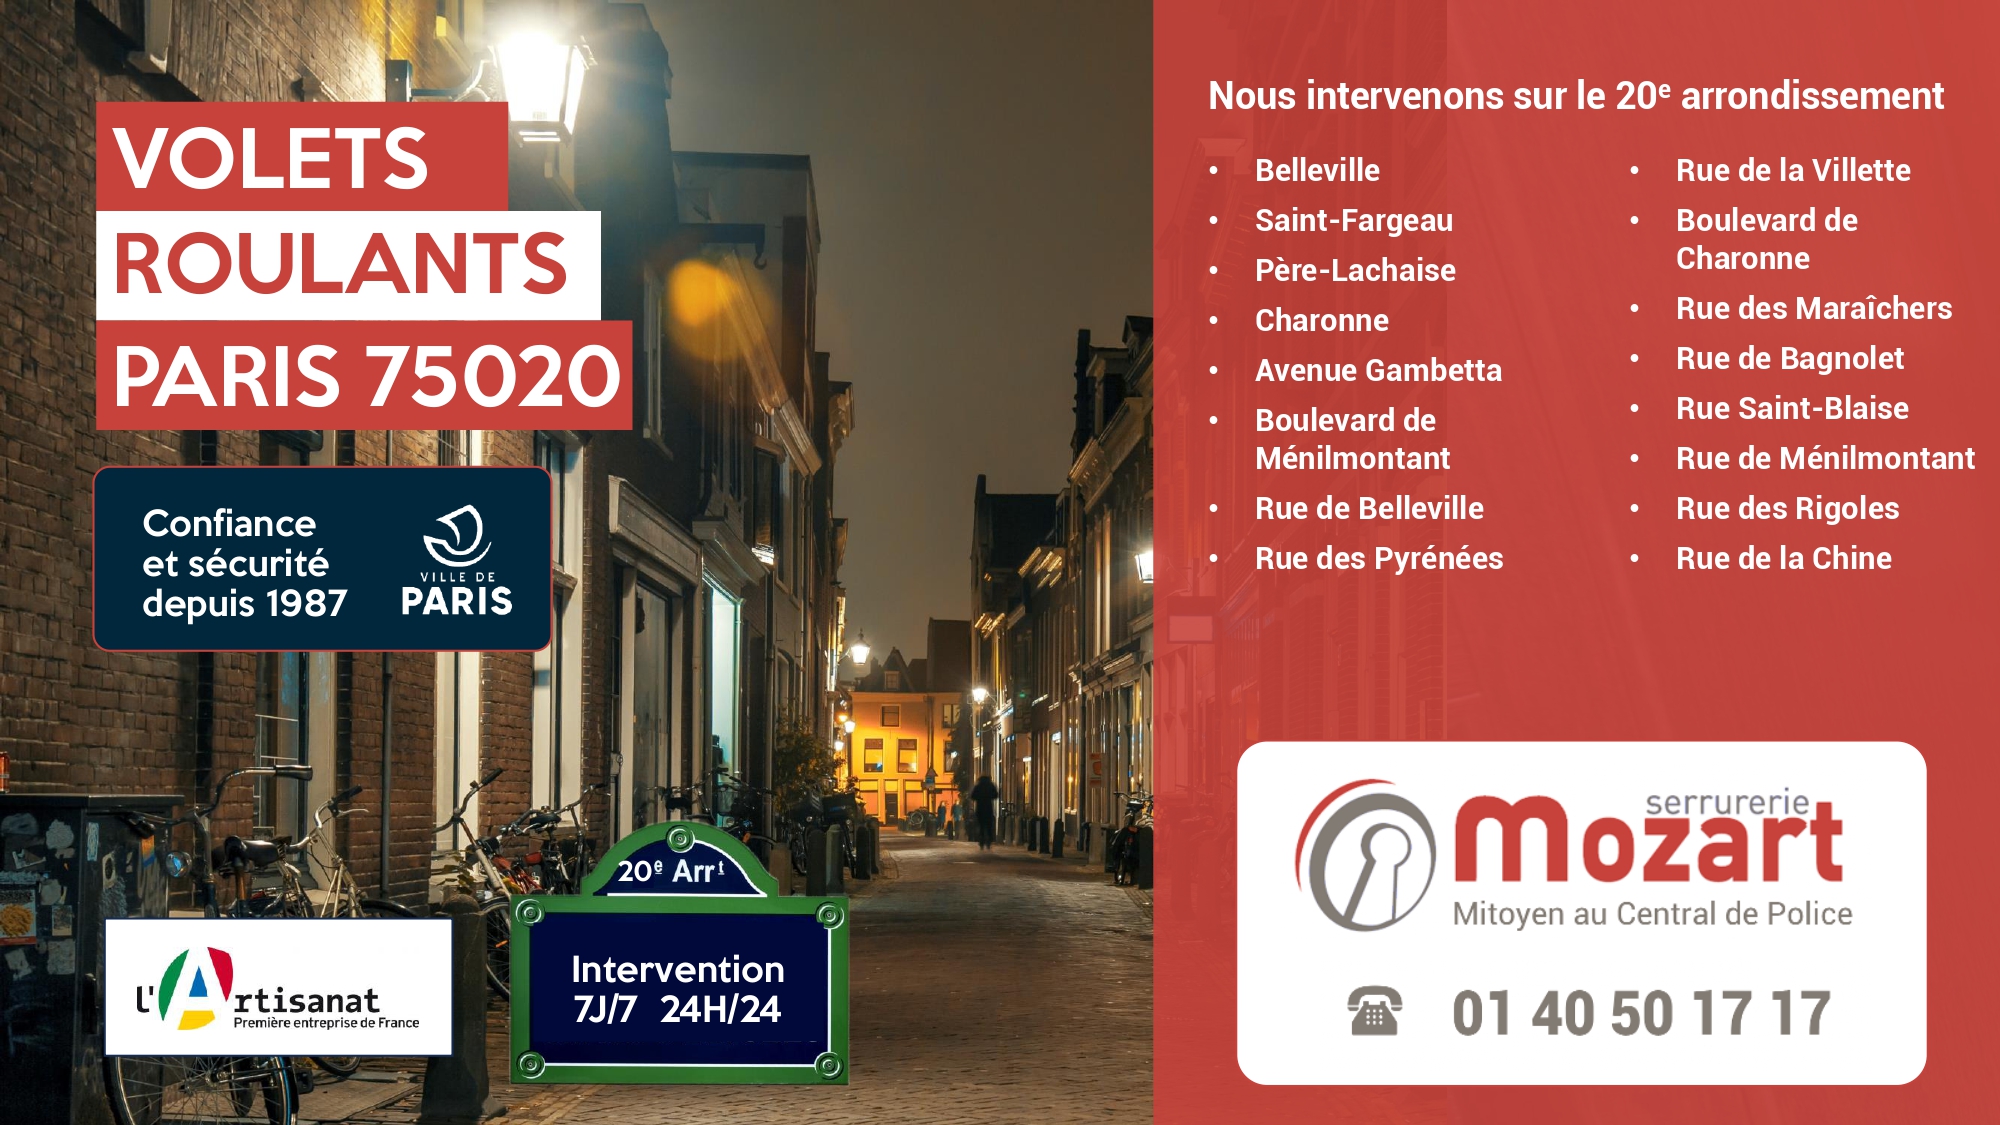 Expert en volets roulants dans les rues du 20ème arrondissement - Serrurerie Mozart - 01 40 50 17 17